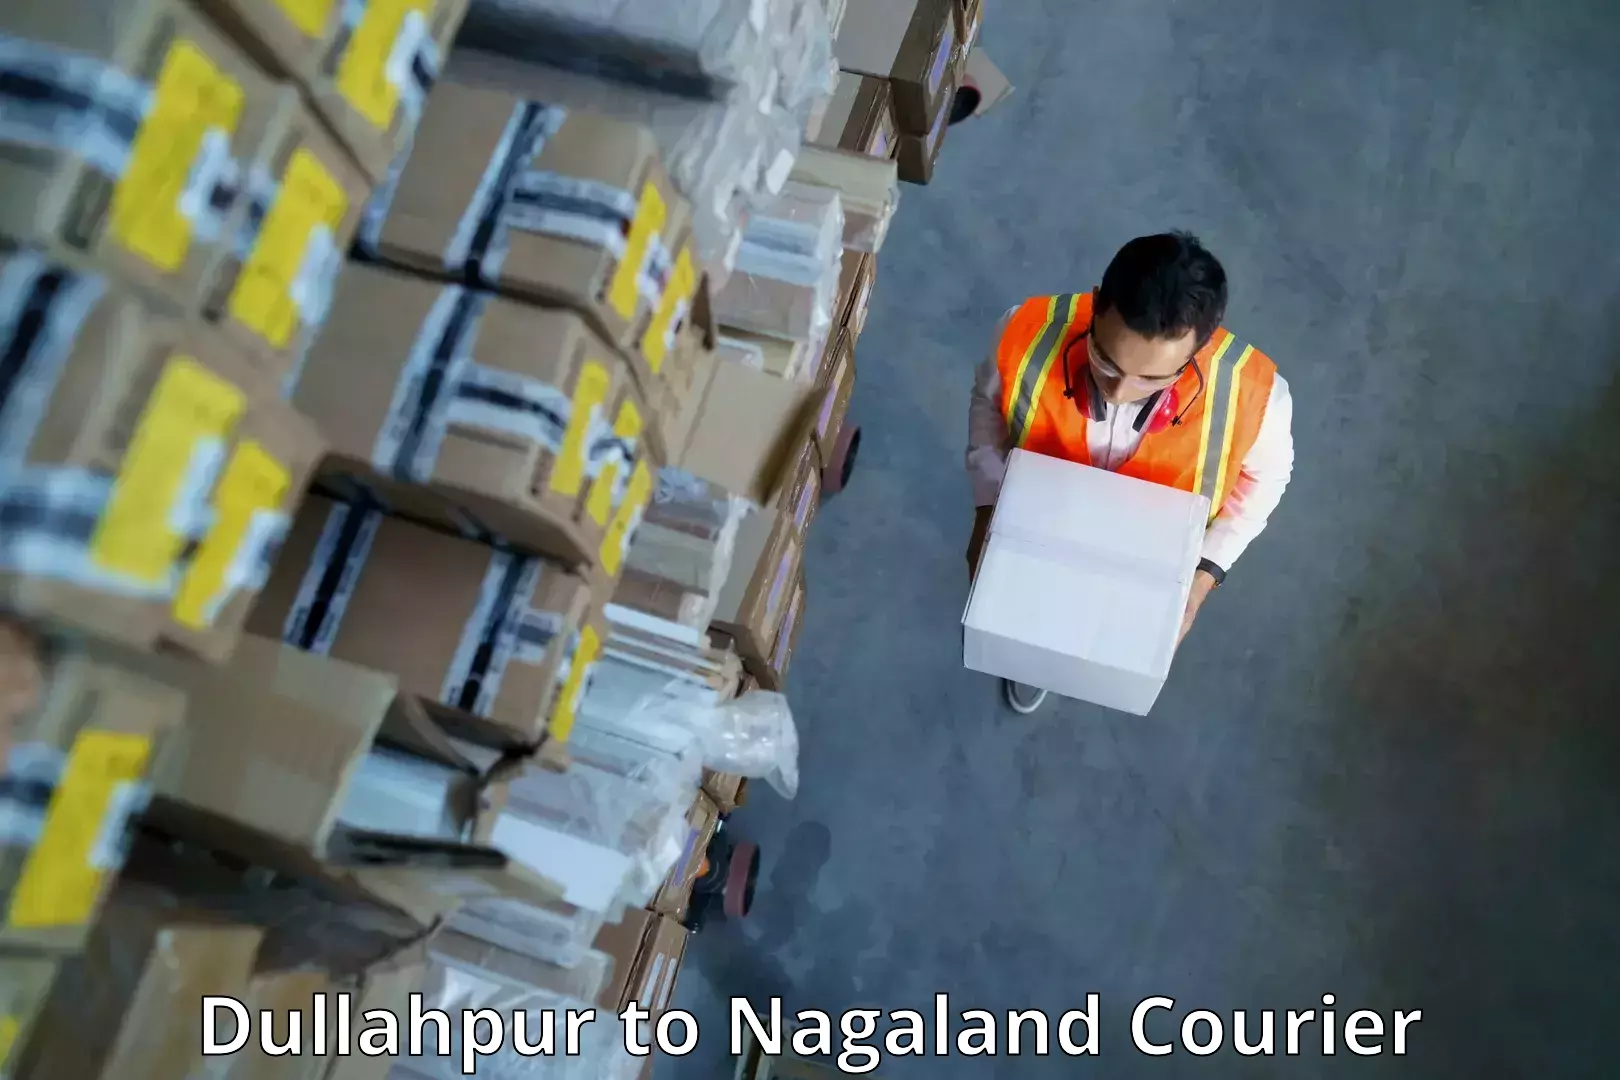 Courier service comparison Dullahpur to Wokha